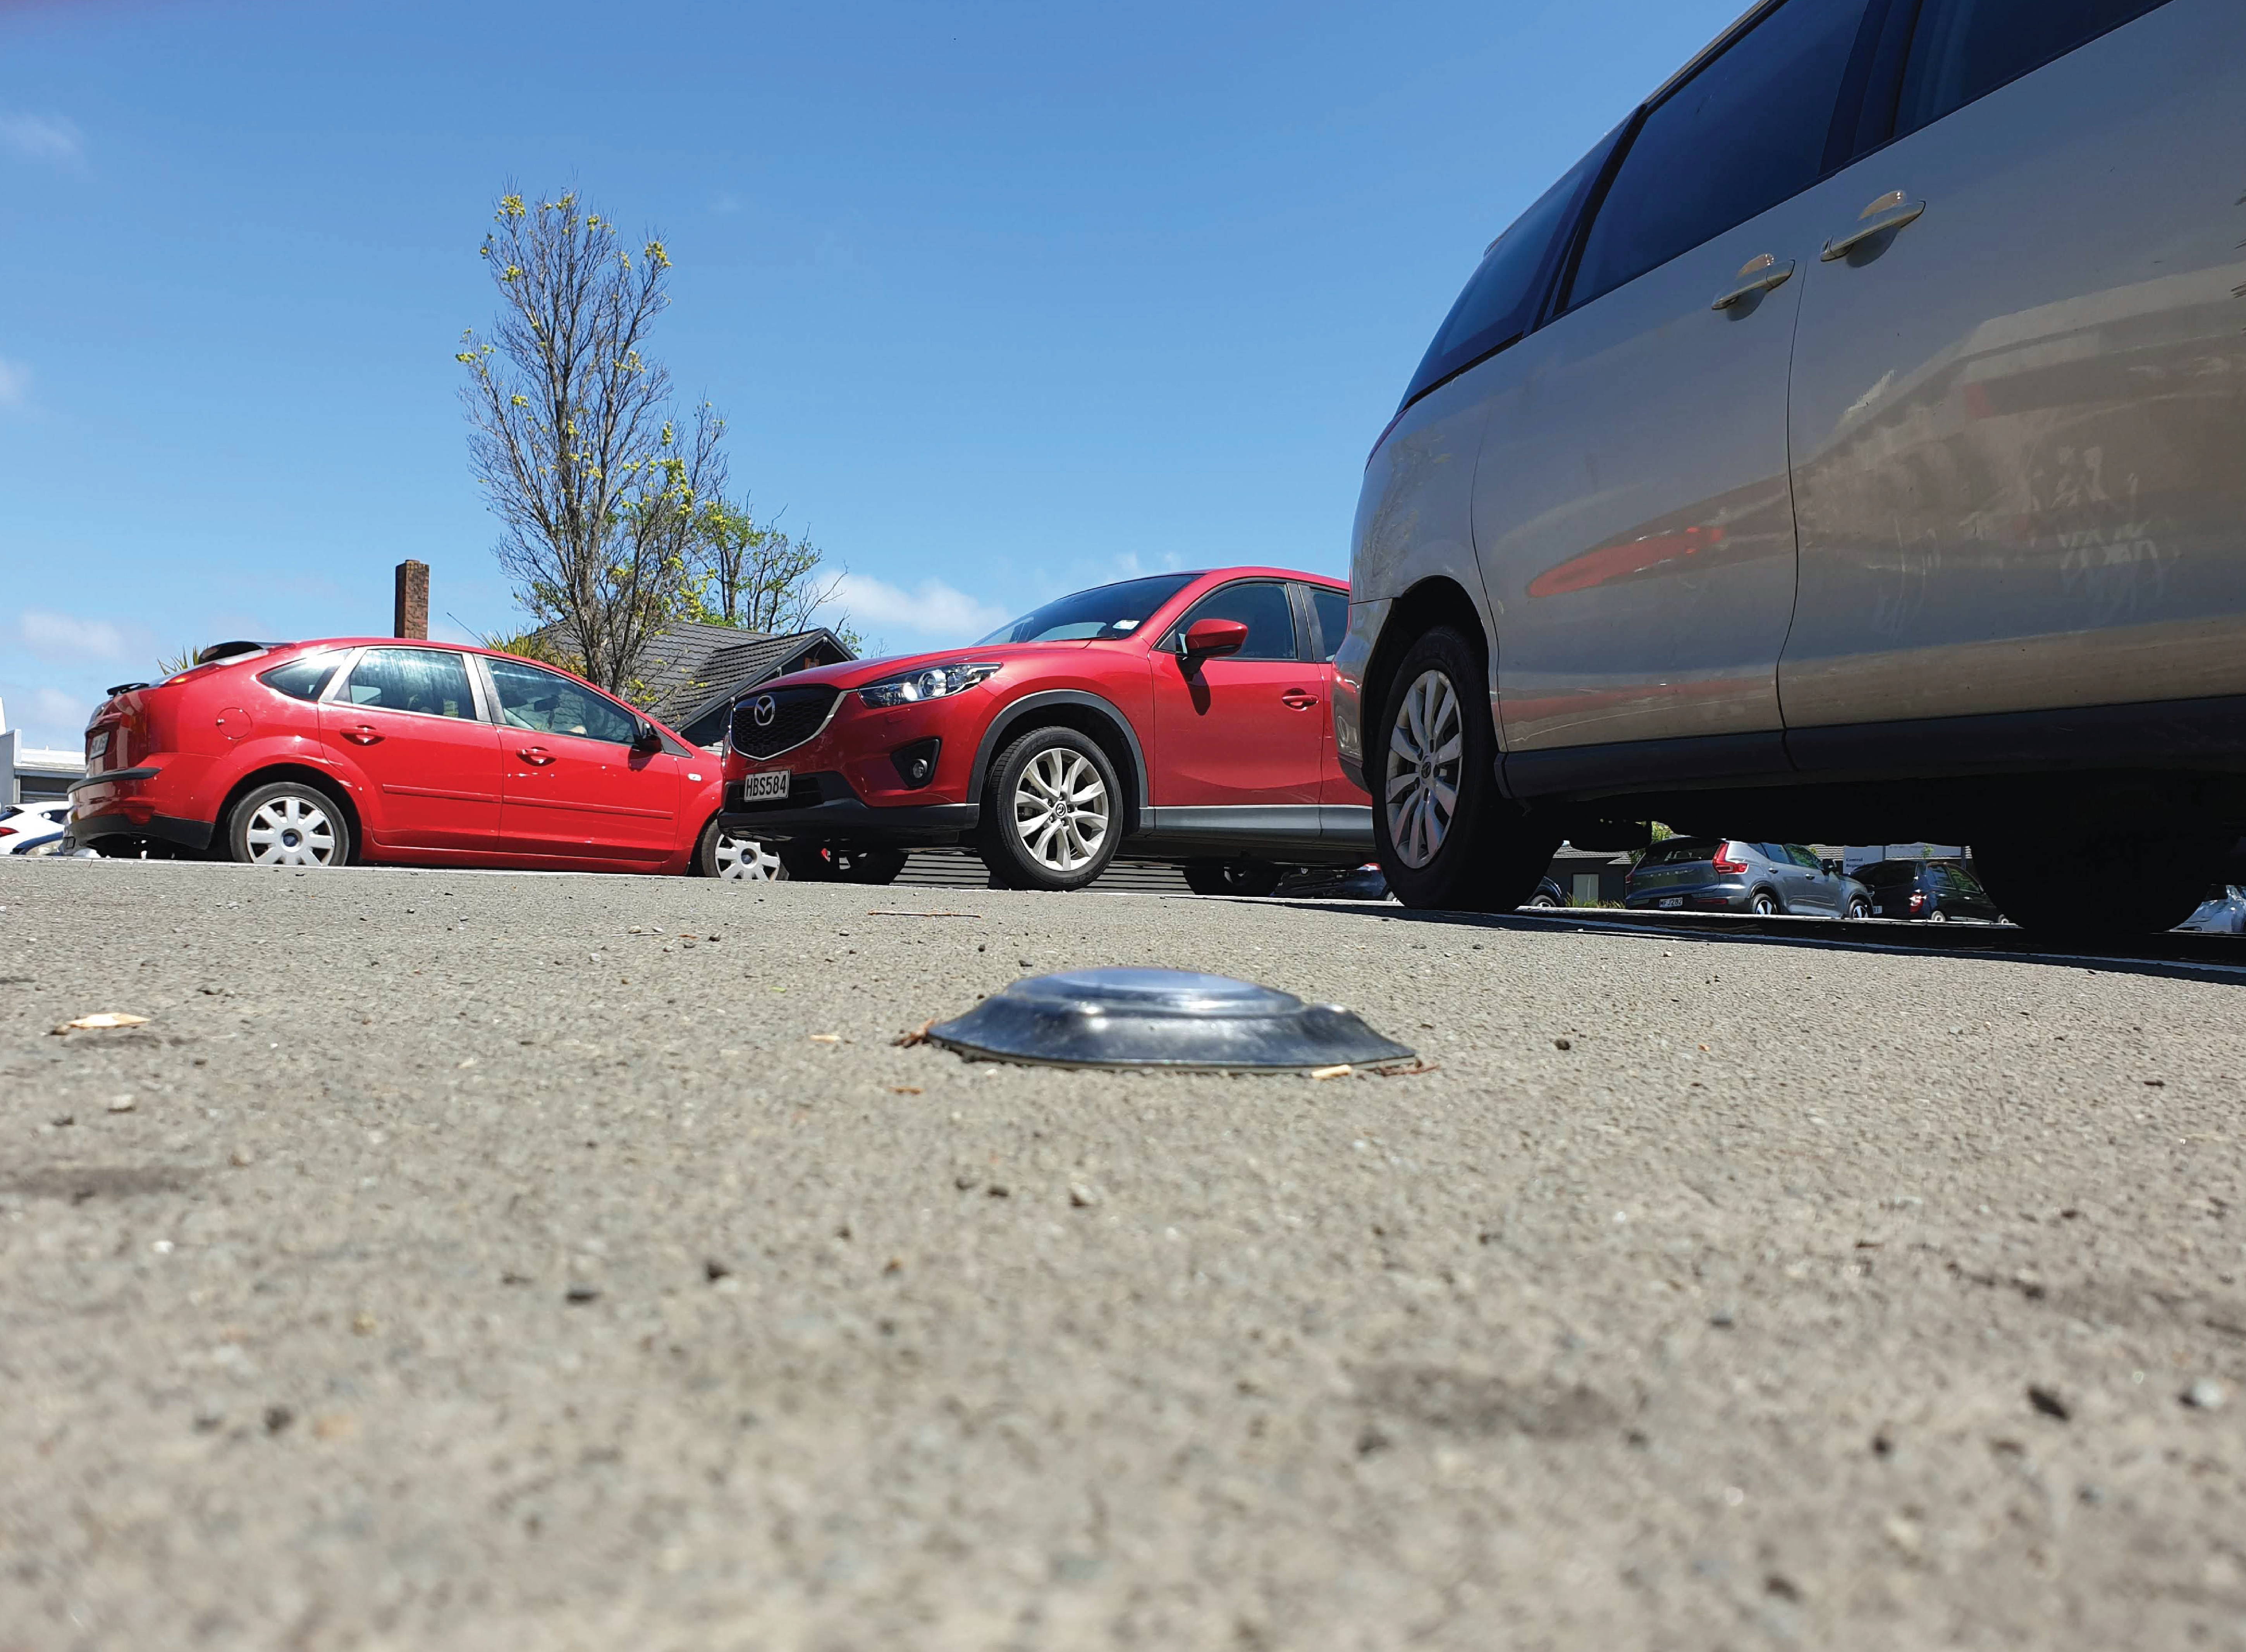 Frogparking | Parking Management Solutions - Parking Sensor 3